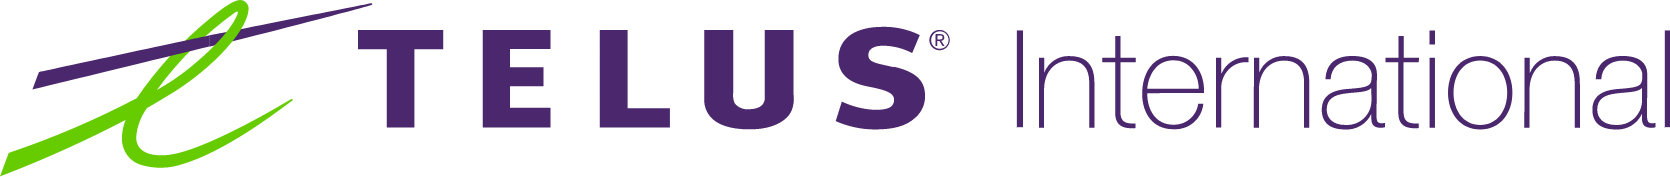 Telus International logo large (transparent PNG)